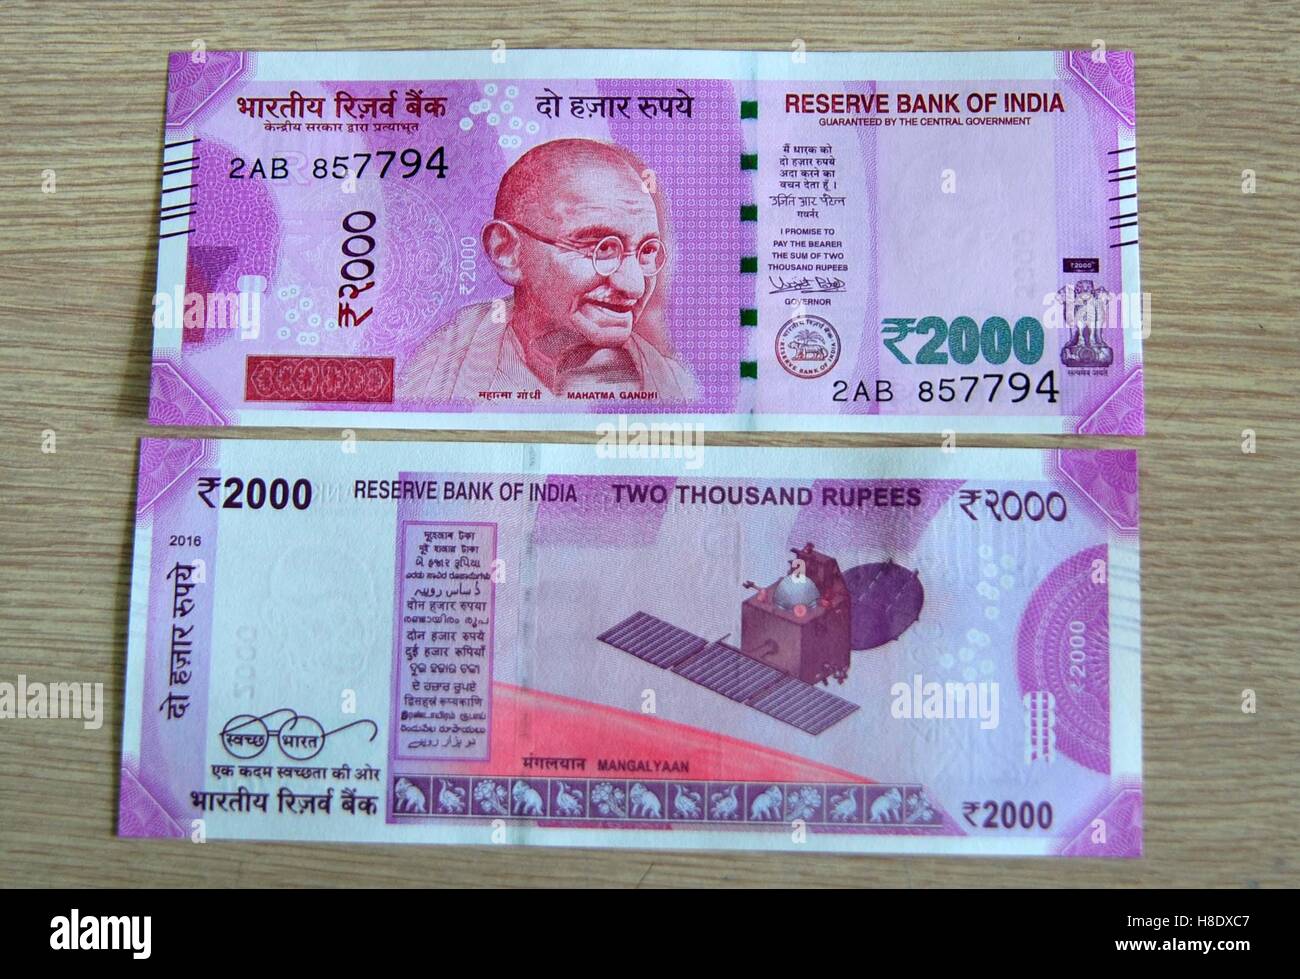 Allahabad, Uttar Pradesh, Indien. 12. November 2016. Allahabad: Einen Überblick über neu eingeführte 2000 Rupie Geldscheine in Allahabad am 11.12.2016. Foto von Prabhat Kumar Verma © Prabhat Kumar Verma/ZUMA Draht/Alamy Live News Stockfoto